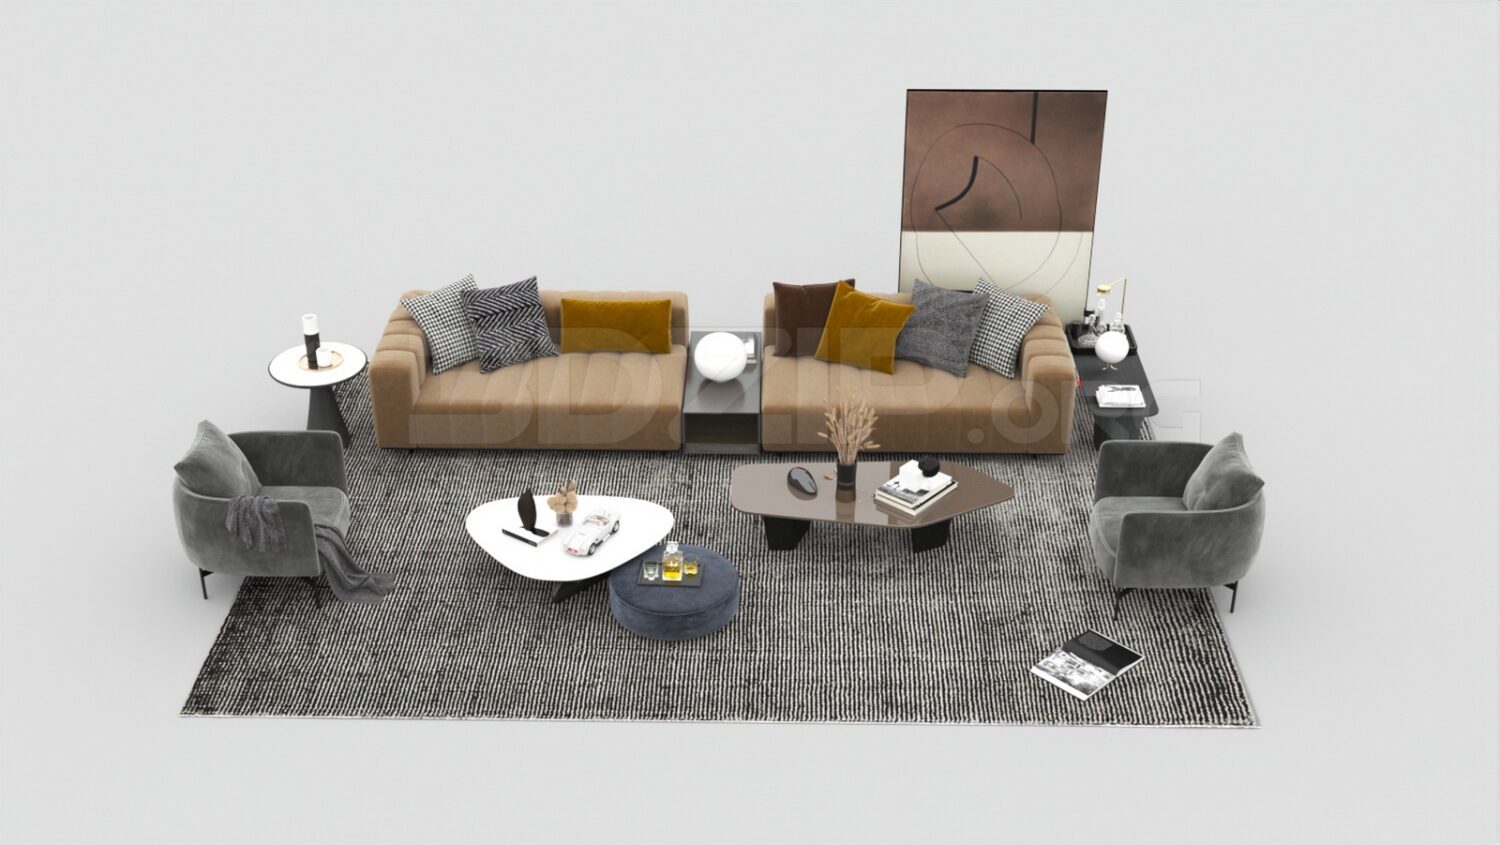 3916. Free 3D Sofa Model Download